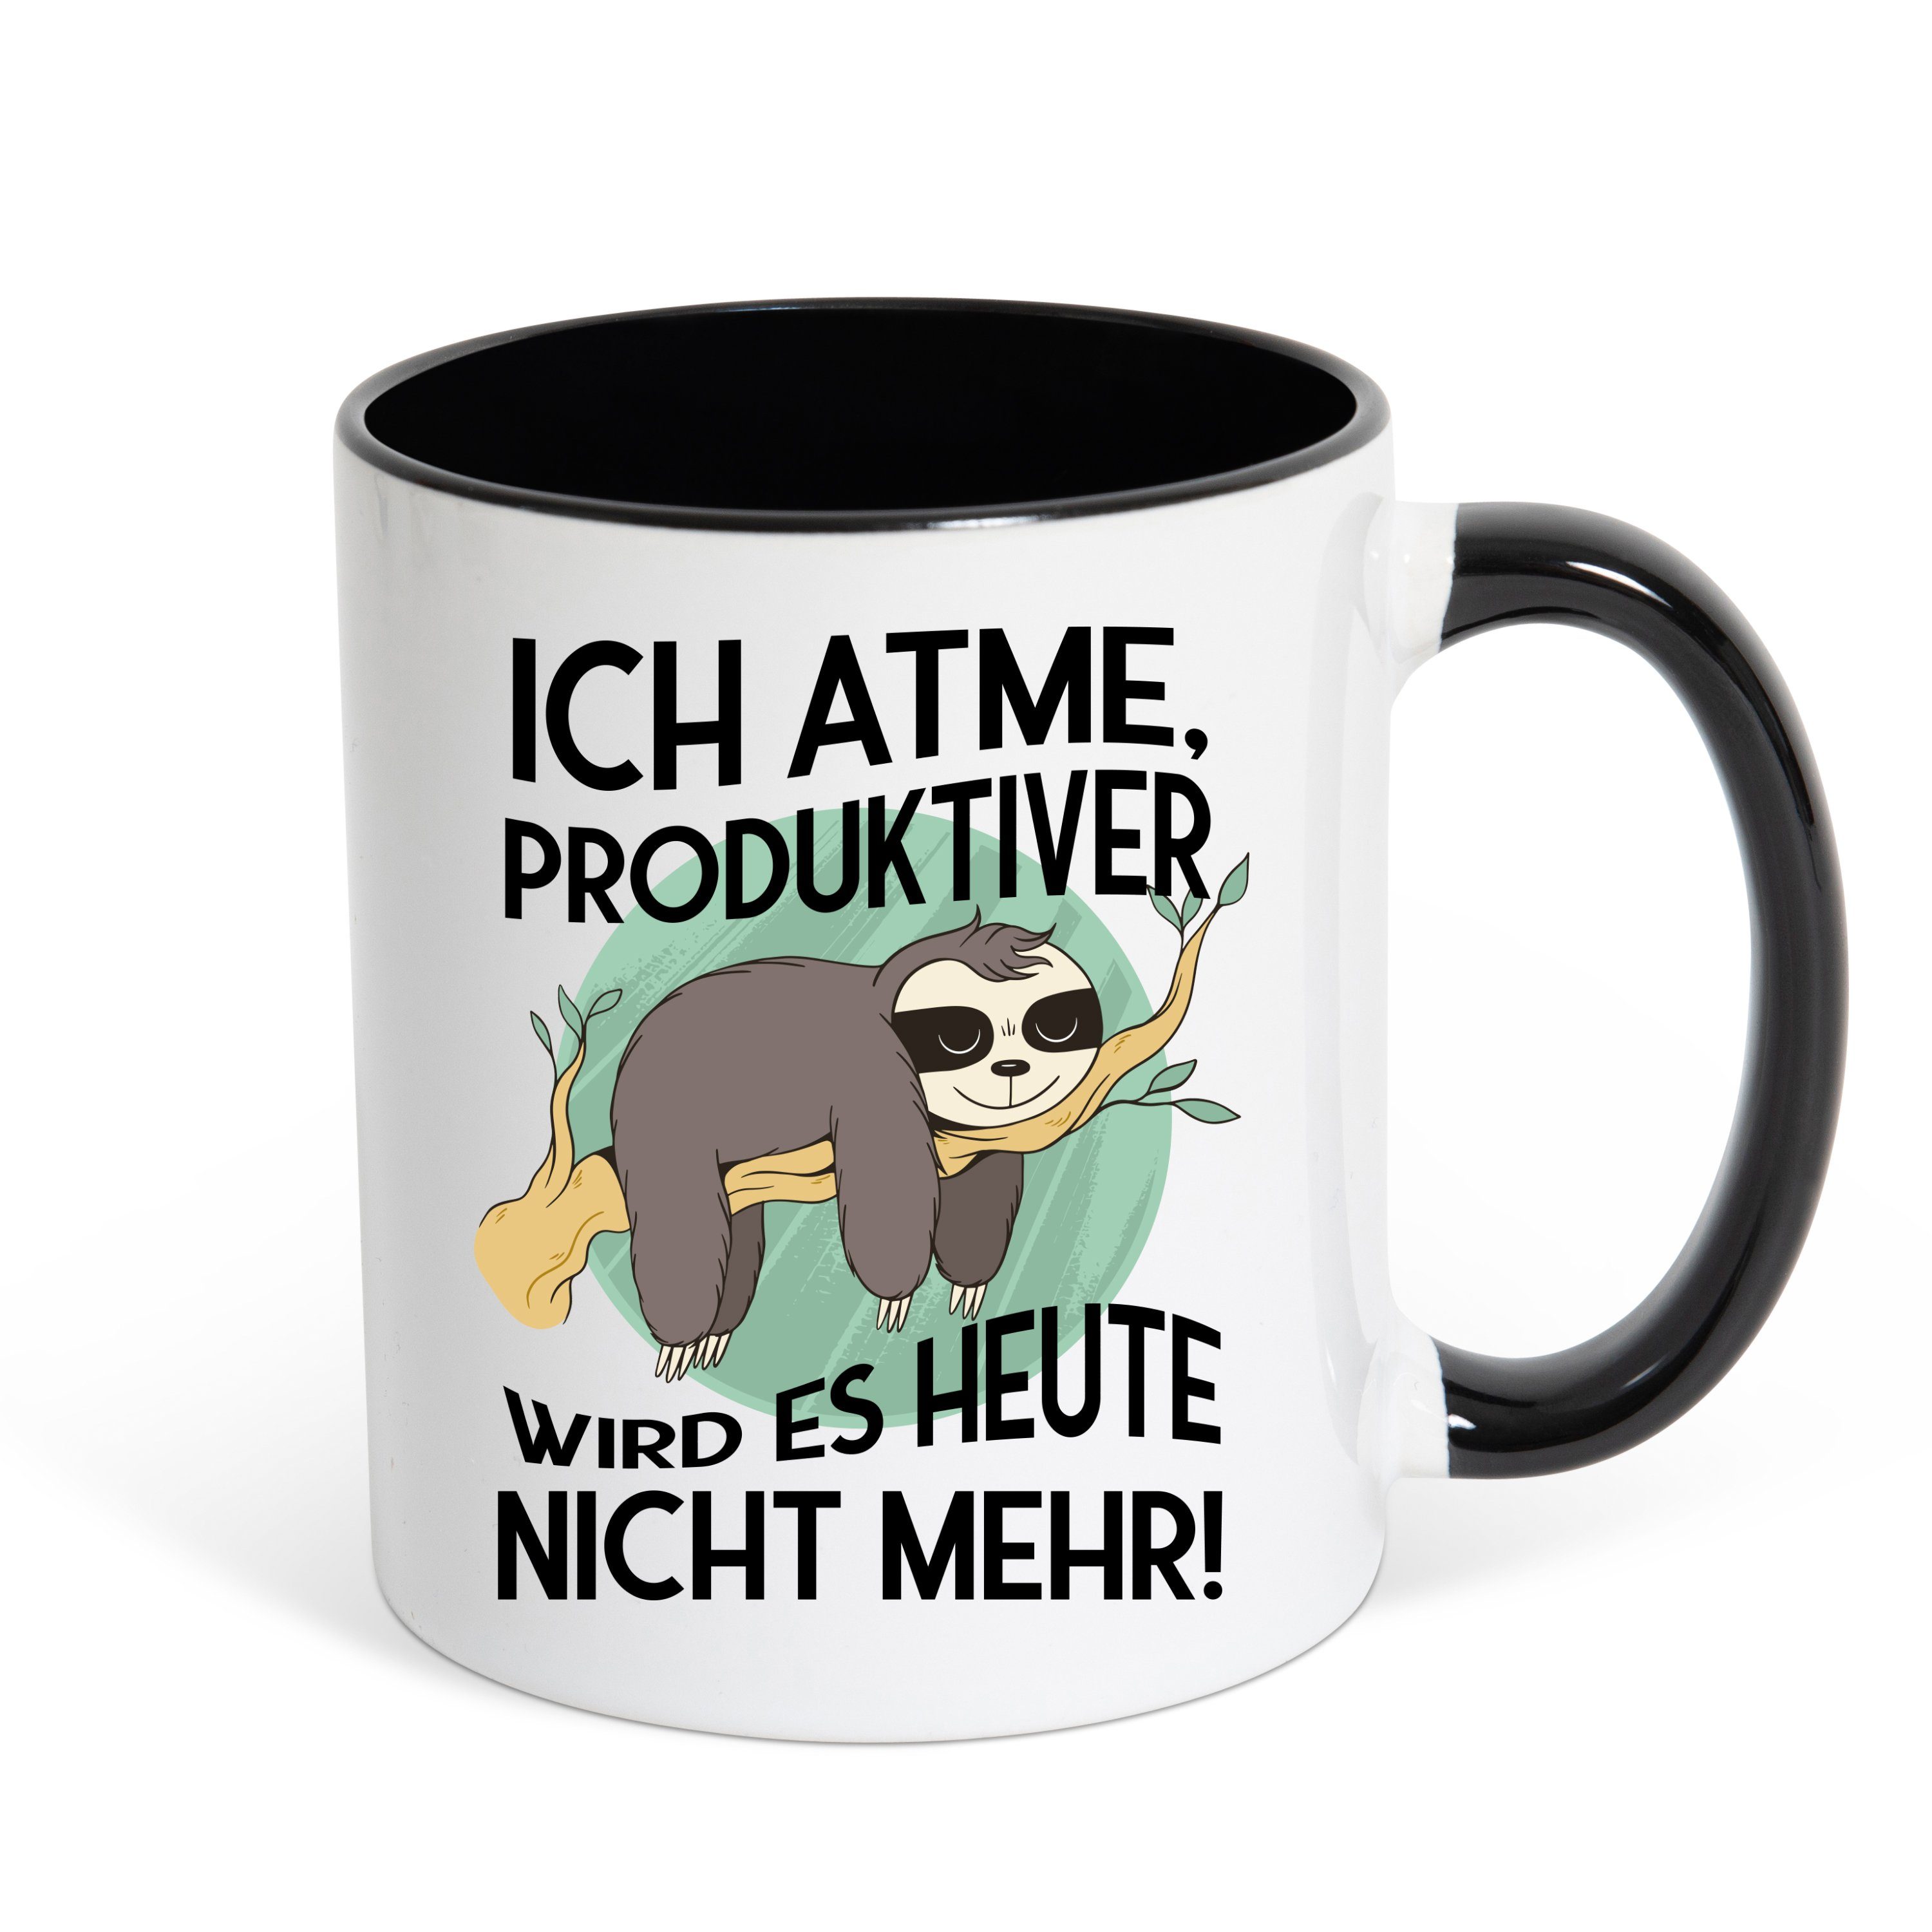 Youth Designz Tasse Ich atme, Produktiver wird es heute nicht mehr Kaffeetasse Geschenk, Keramik, mit lustigem Print Weiss/Schwarz